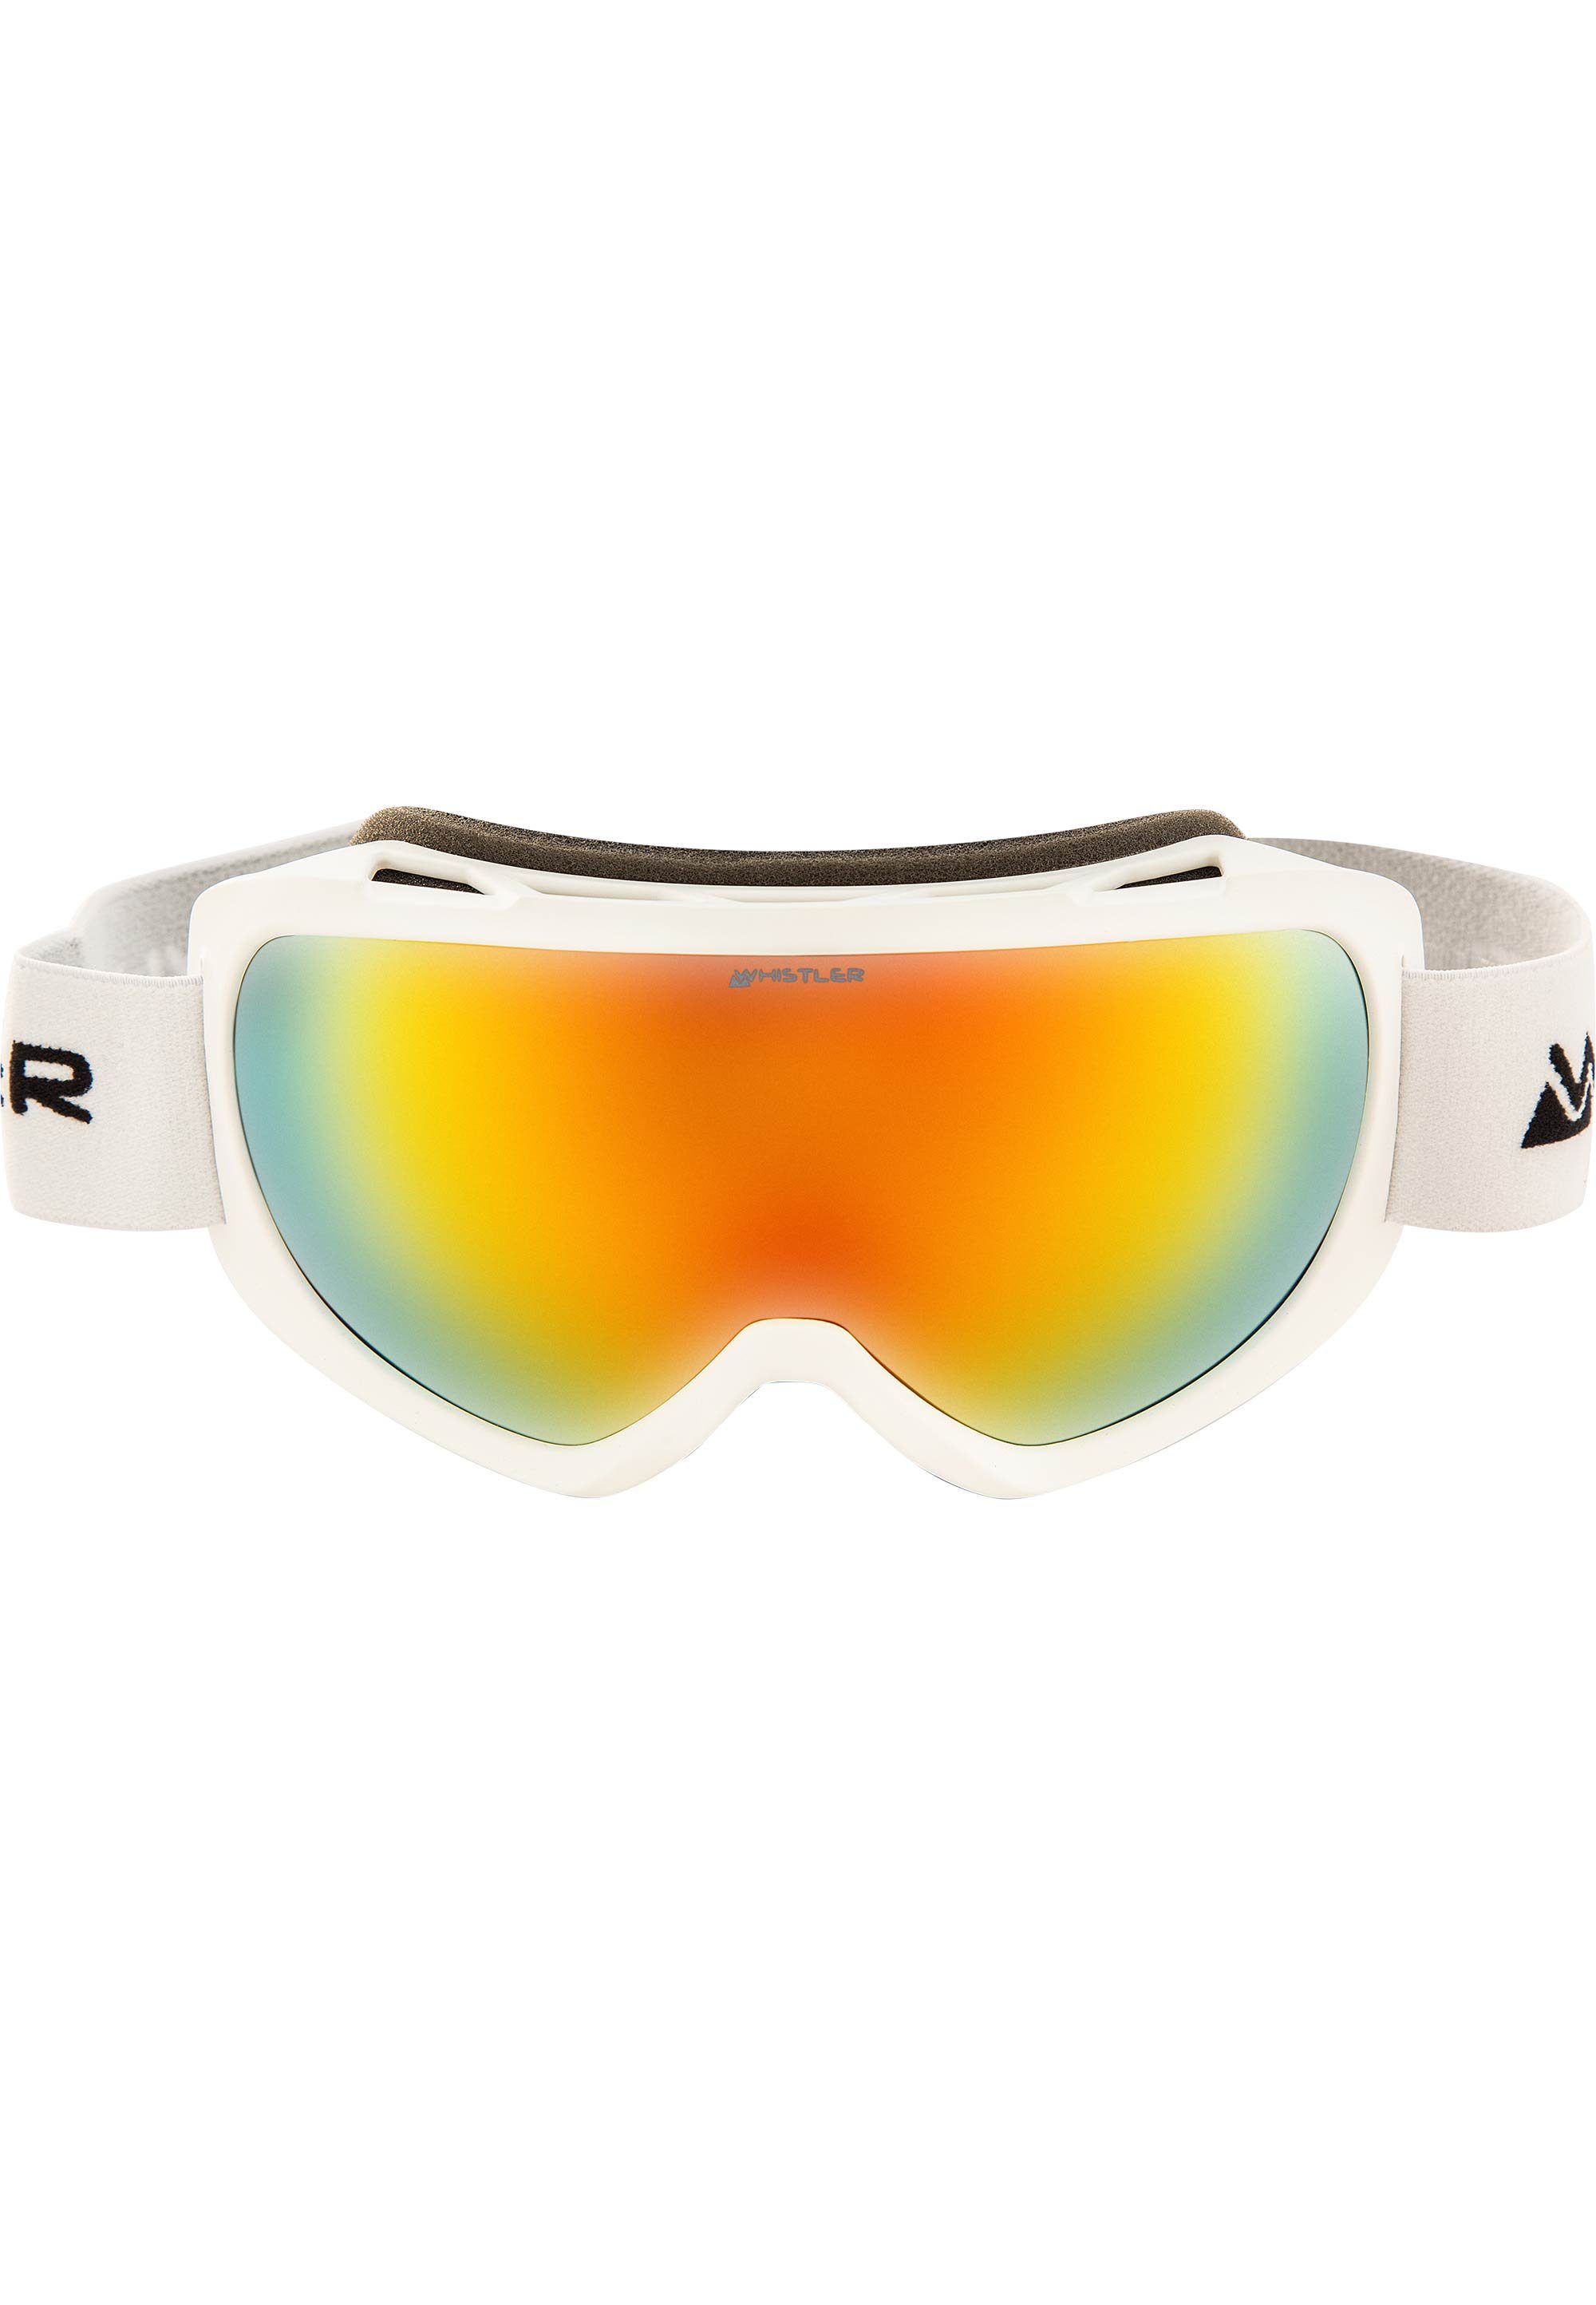 WHISTLER Skibrille WS5500, mit Anti-Fog-Beschichtung